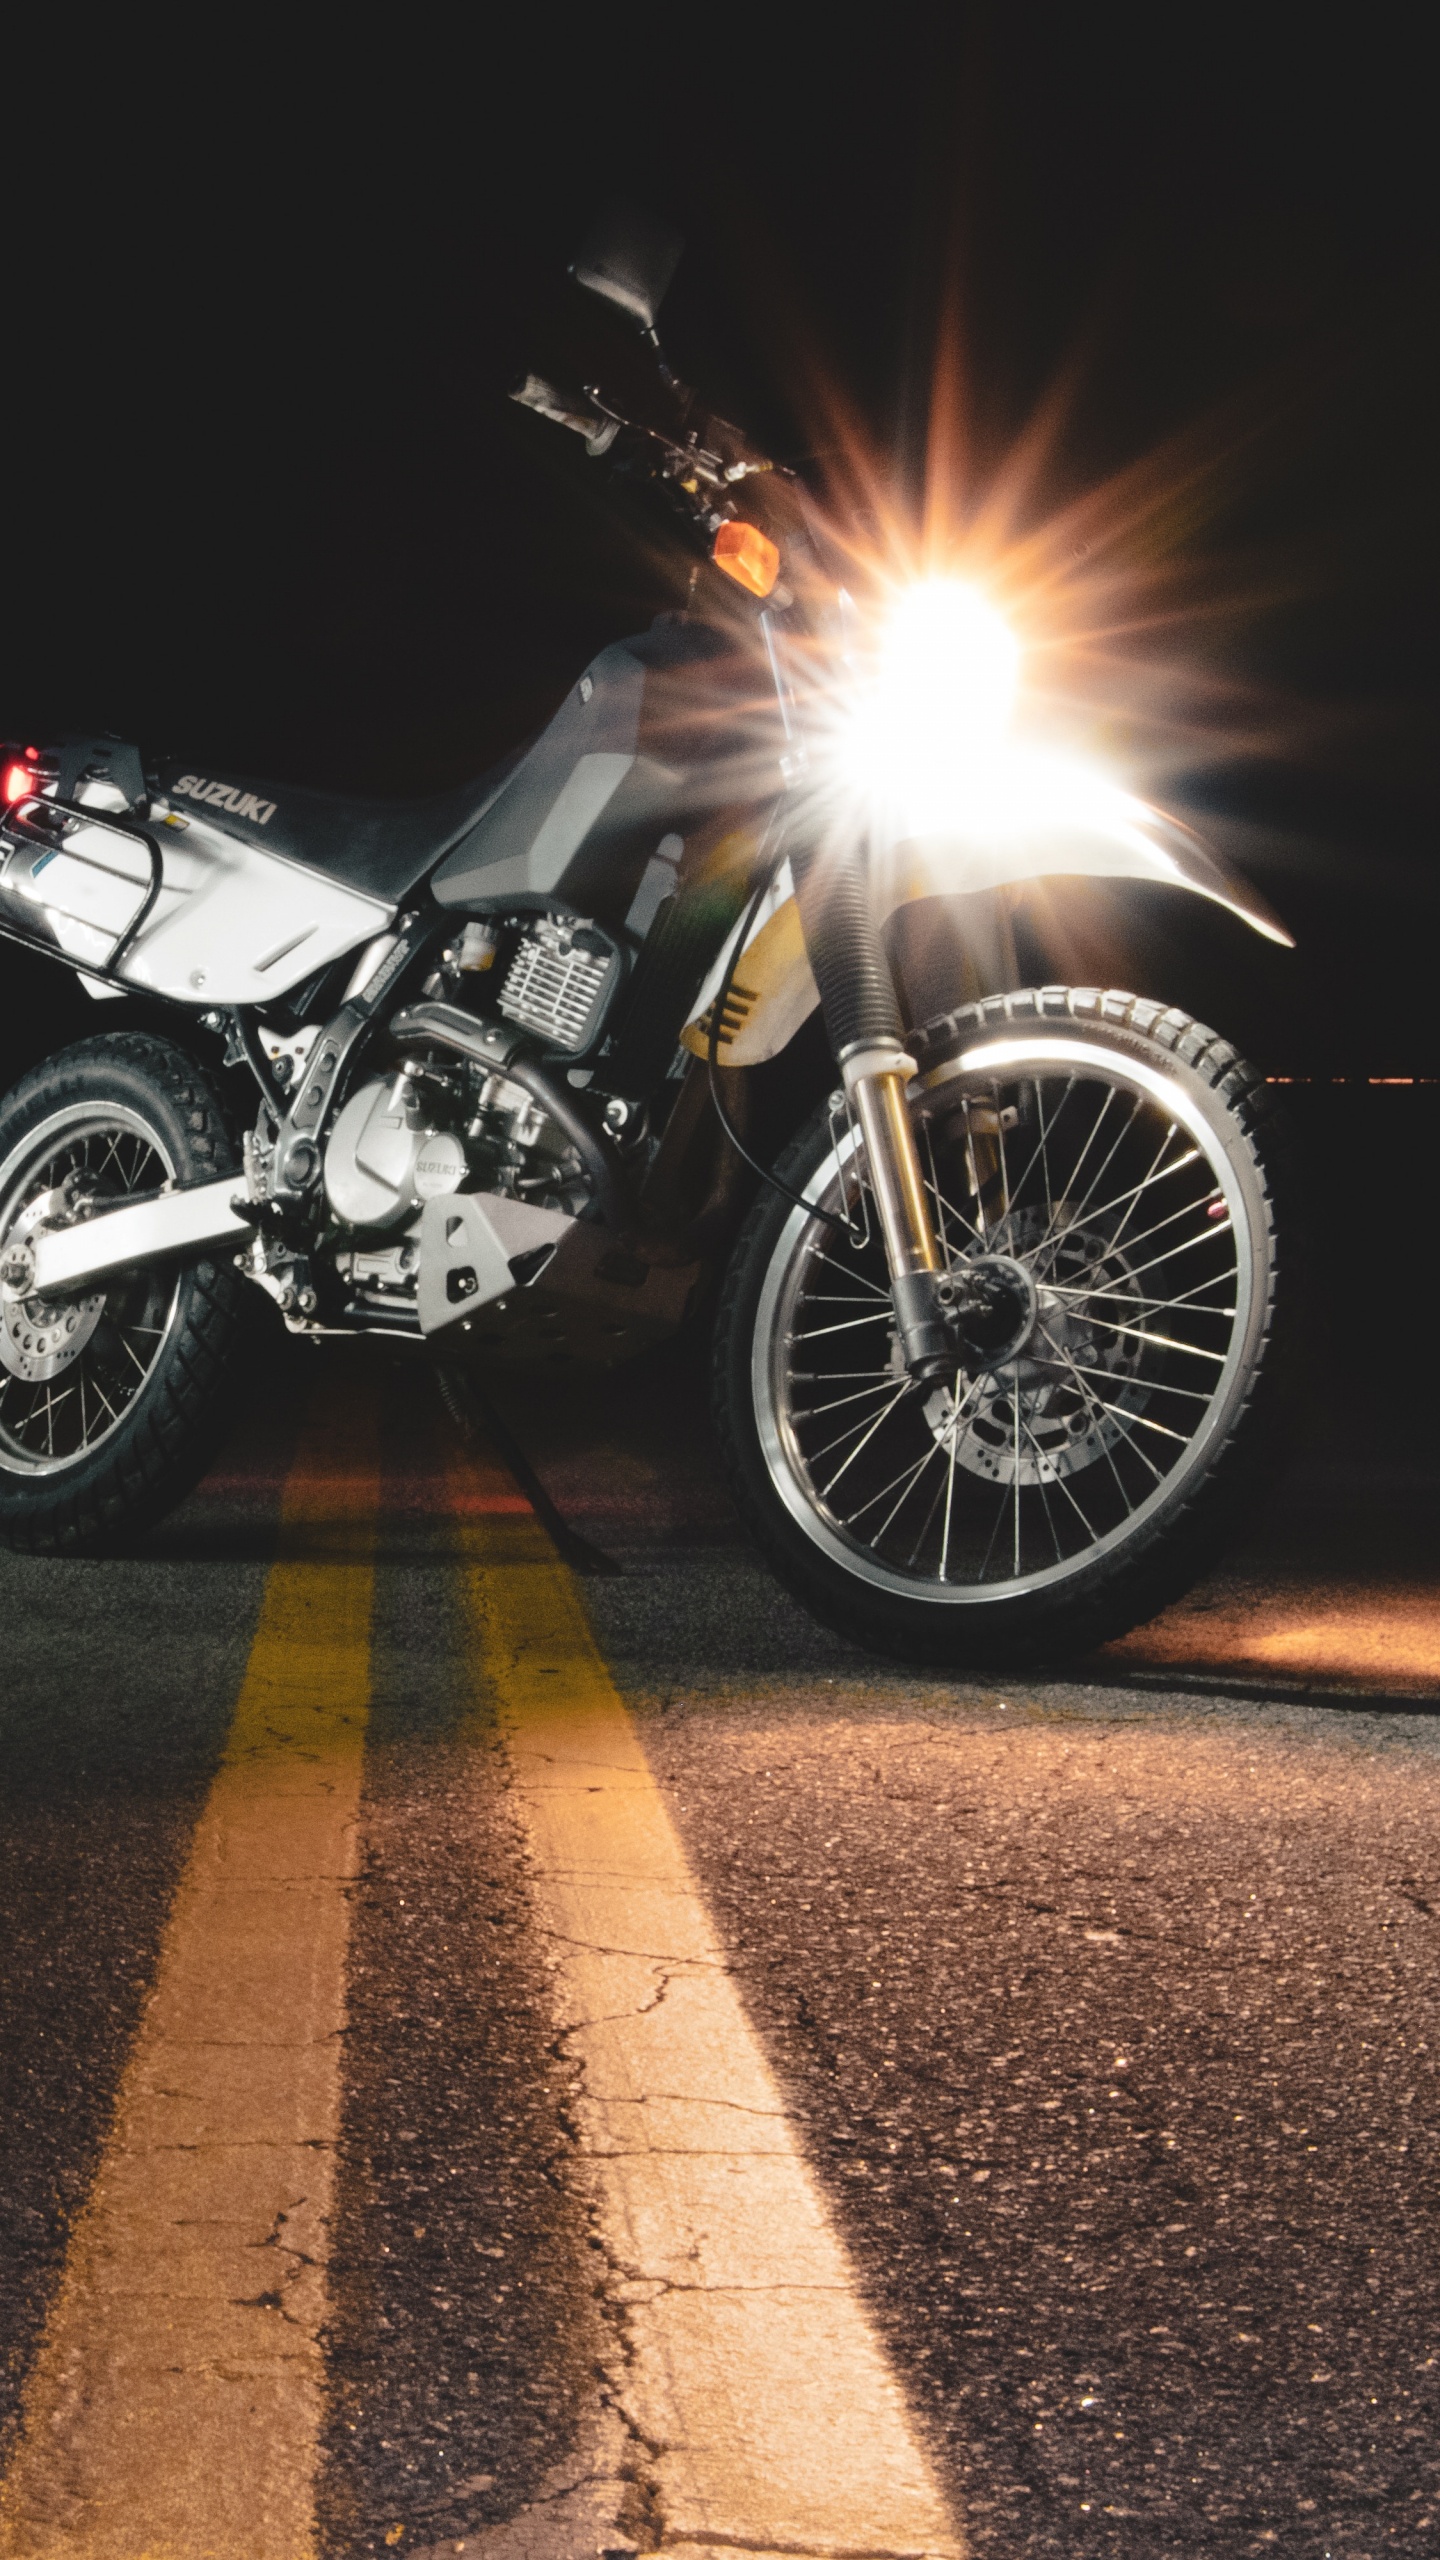 Motocicleta Negra y Plateada en la Carretera Durante la Noche. Wallpaper in 1440x2560 Resolution